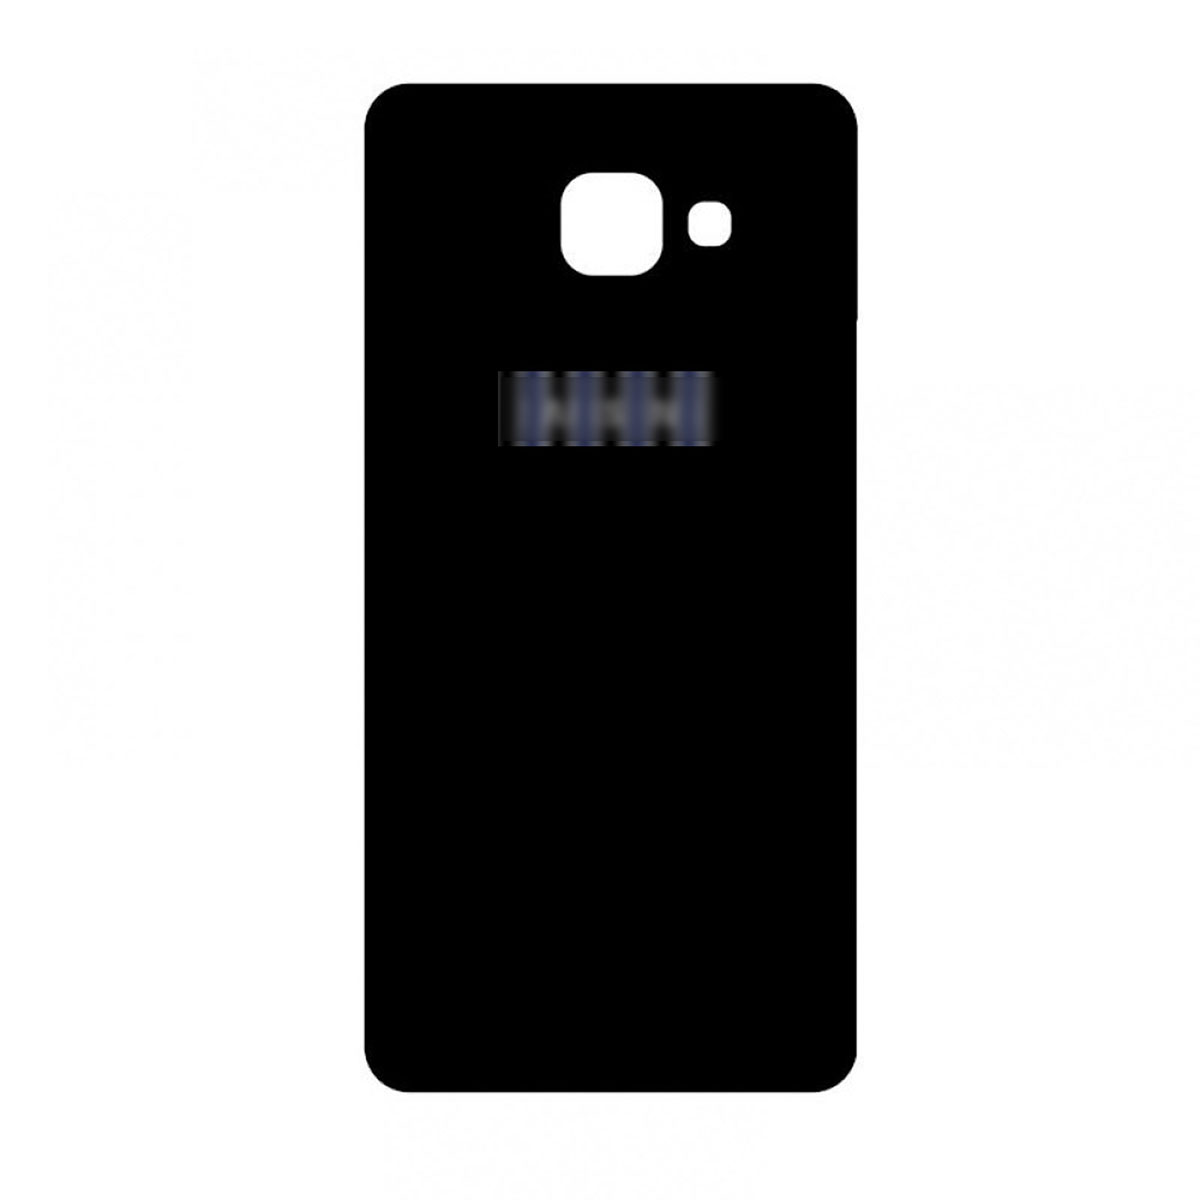 Крышка корпуса задняя для SAMSUNG Galaxy A7 2016 (SM-A710F), оригинал, цвет черный.